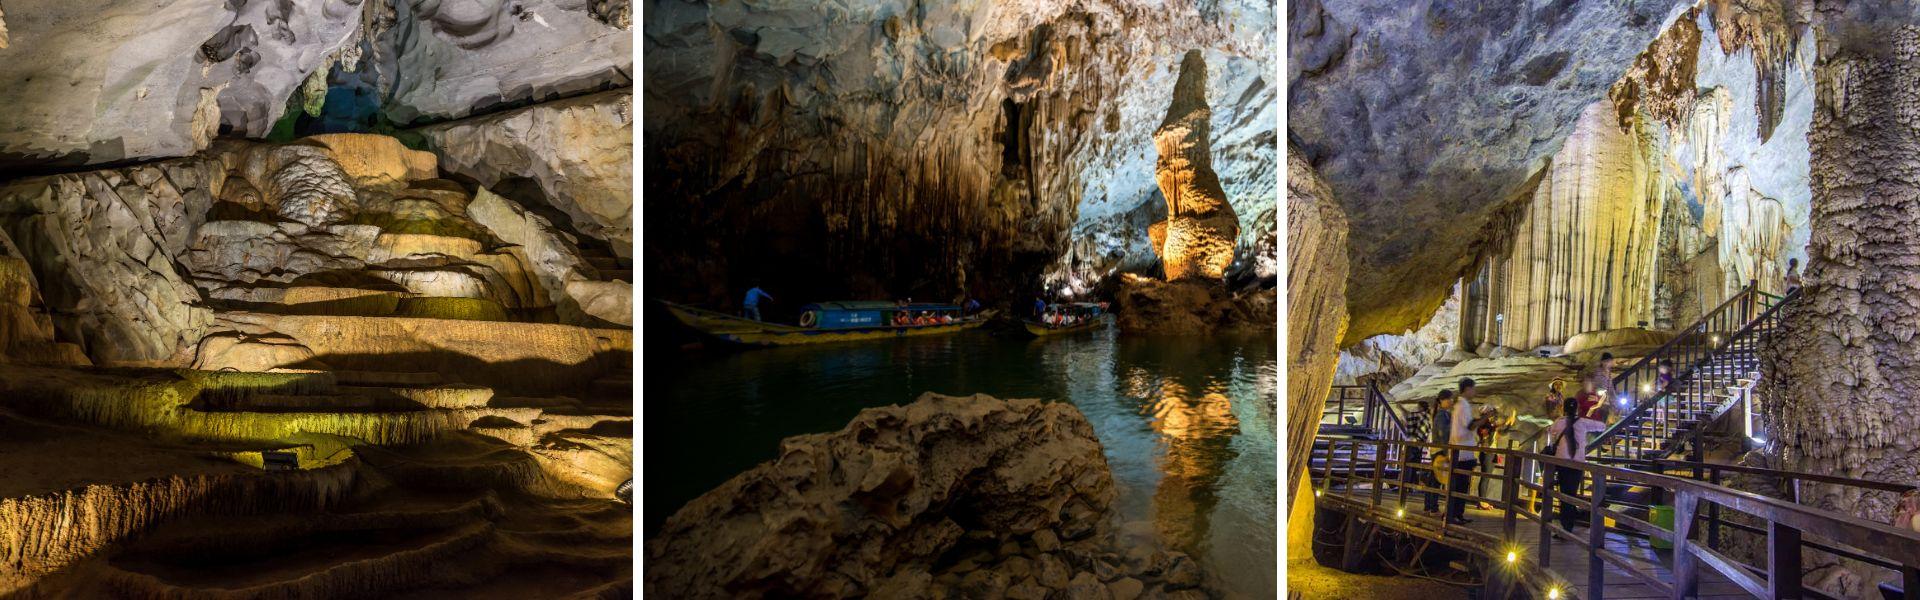 Quang Binh Vietnam : Tout à savoir sur ses grottes magnifiques